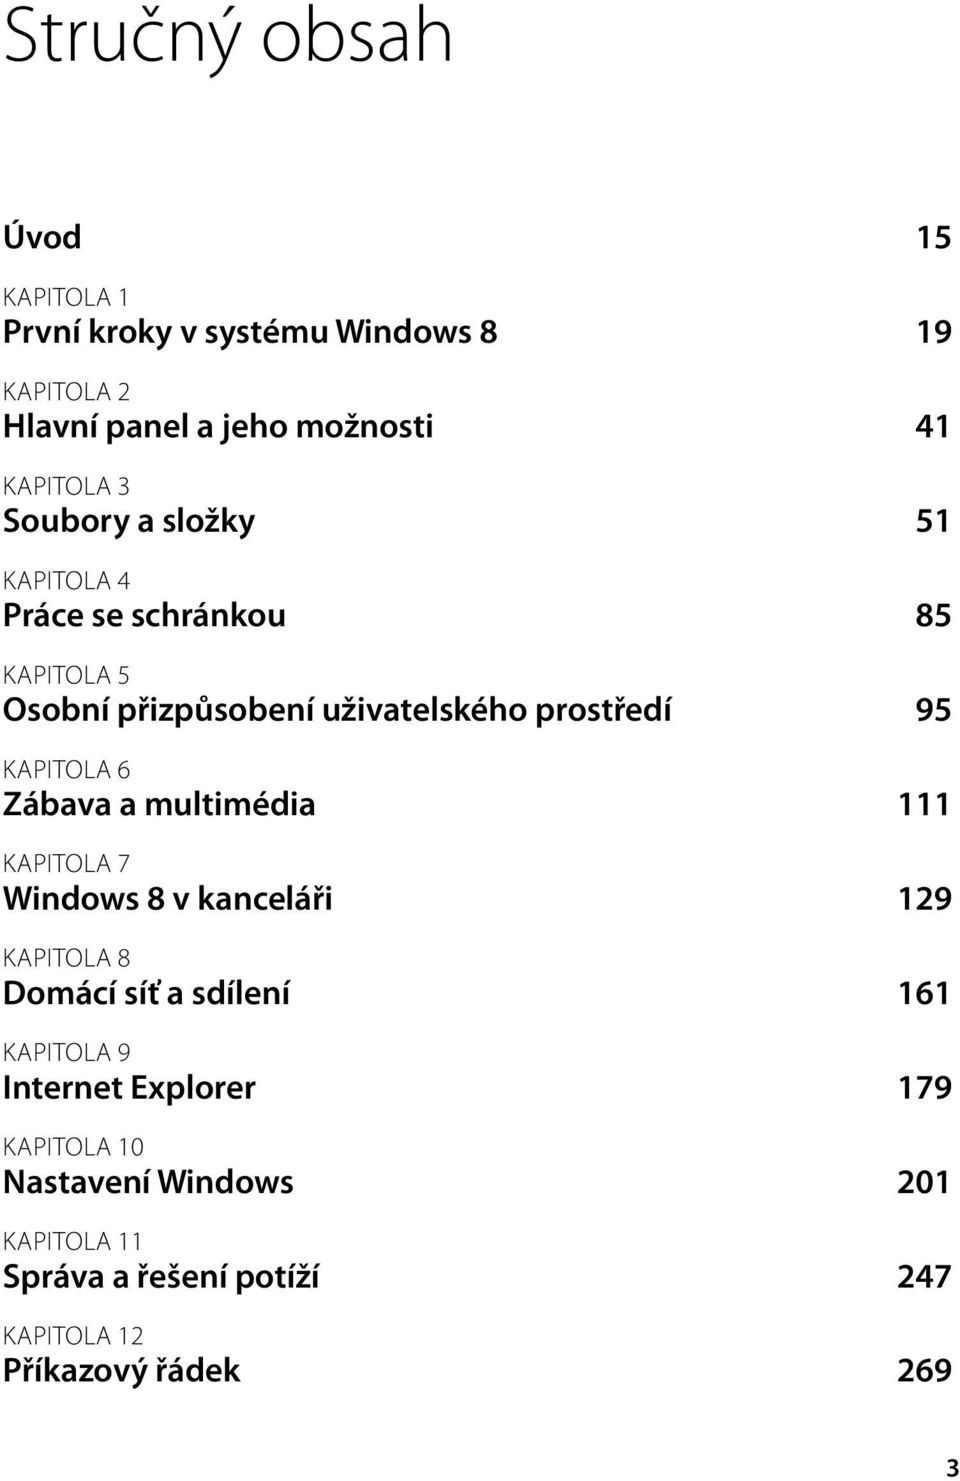 KAPITOLA 6 Zábava a multimédia 111 KAPITOLA 7 Windows 8 v kanceláři 129 KAPITOLA 8 Domácí síť a sdílení 161 KAPITOLA 9